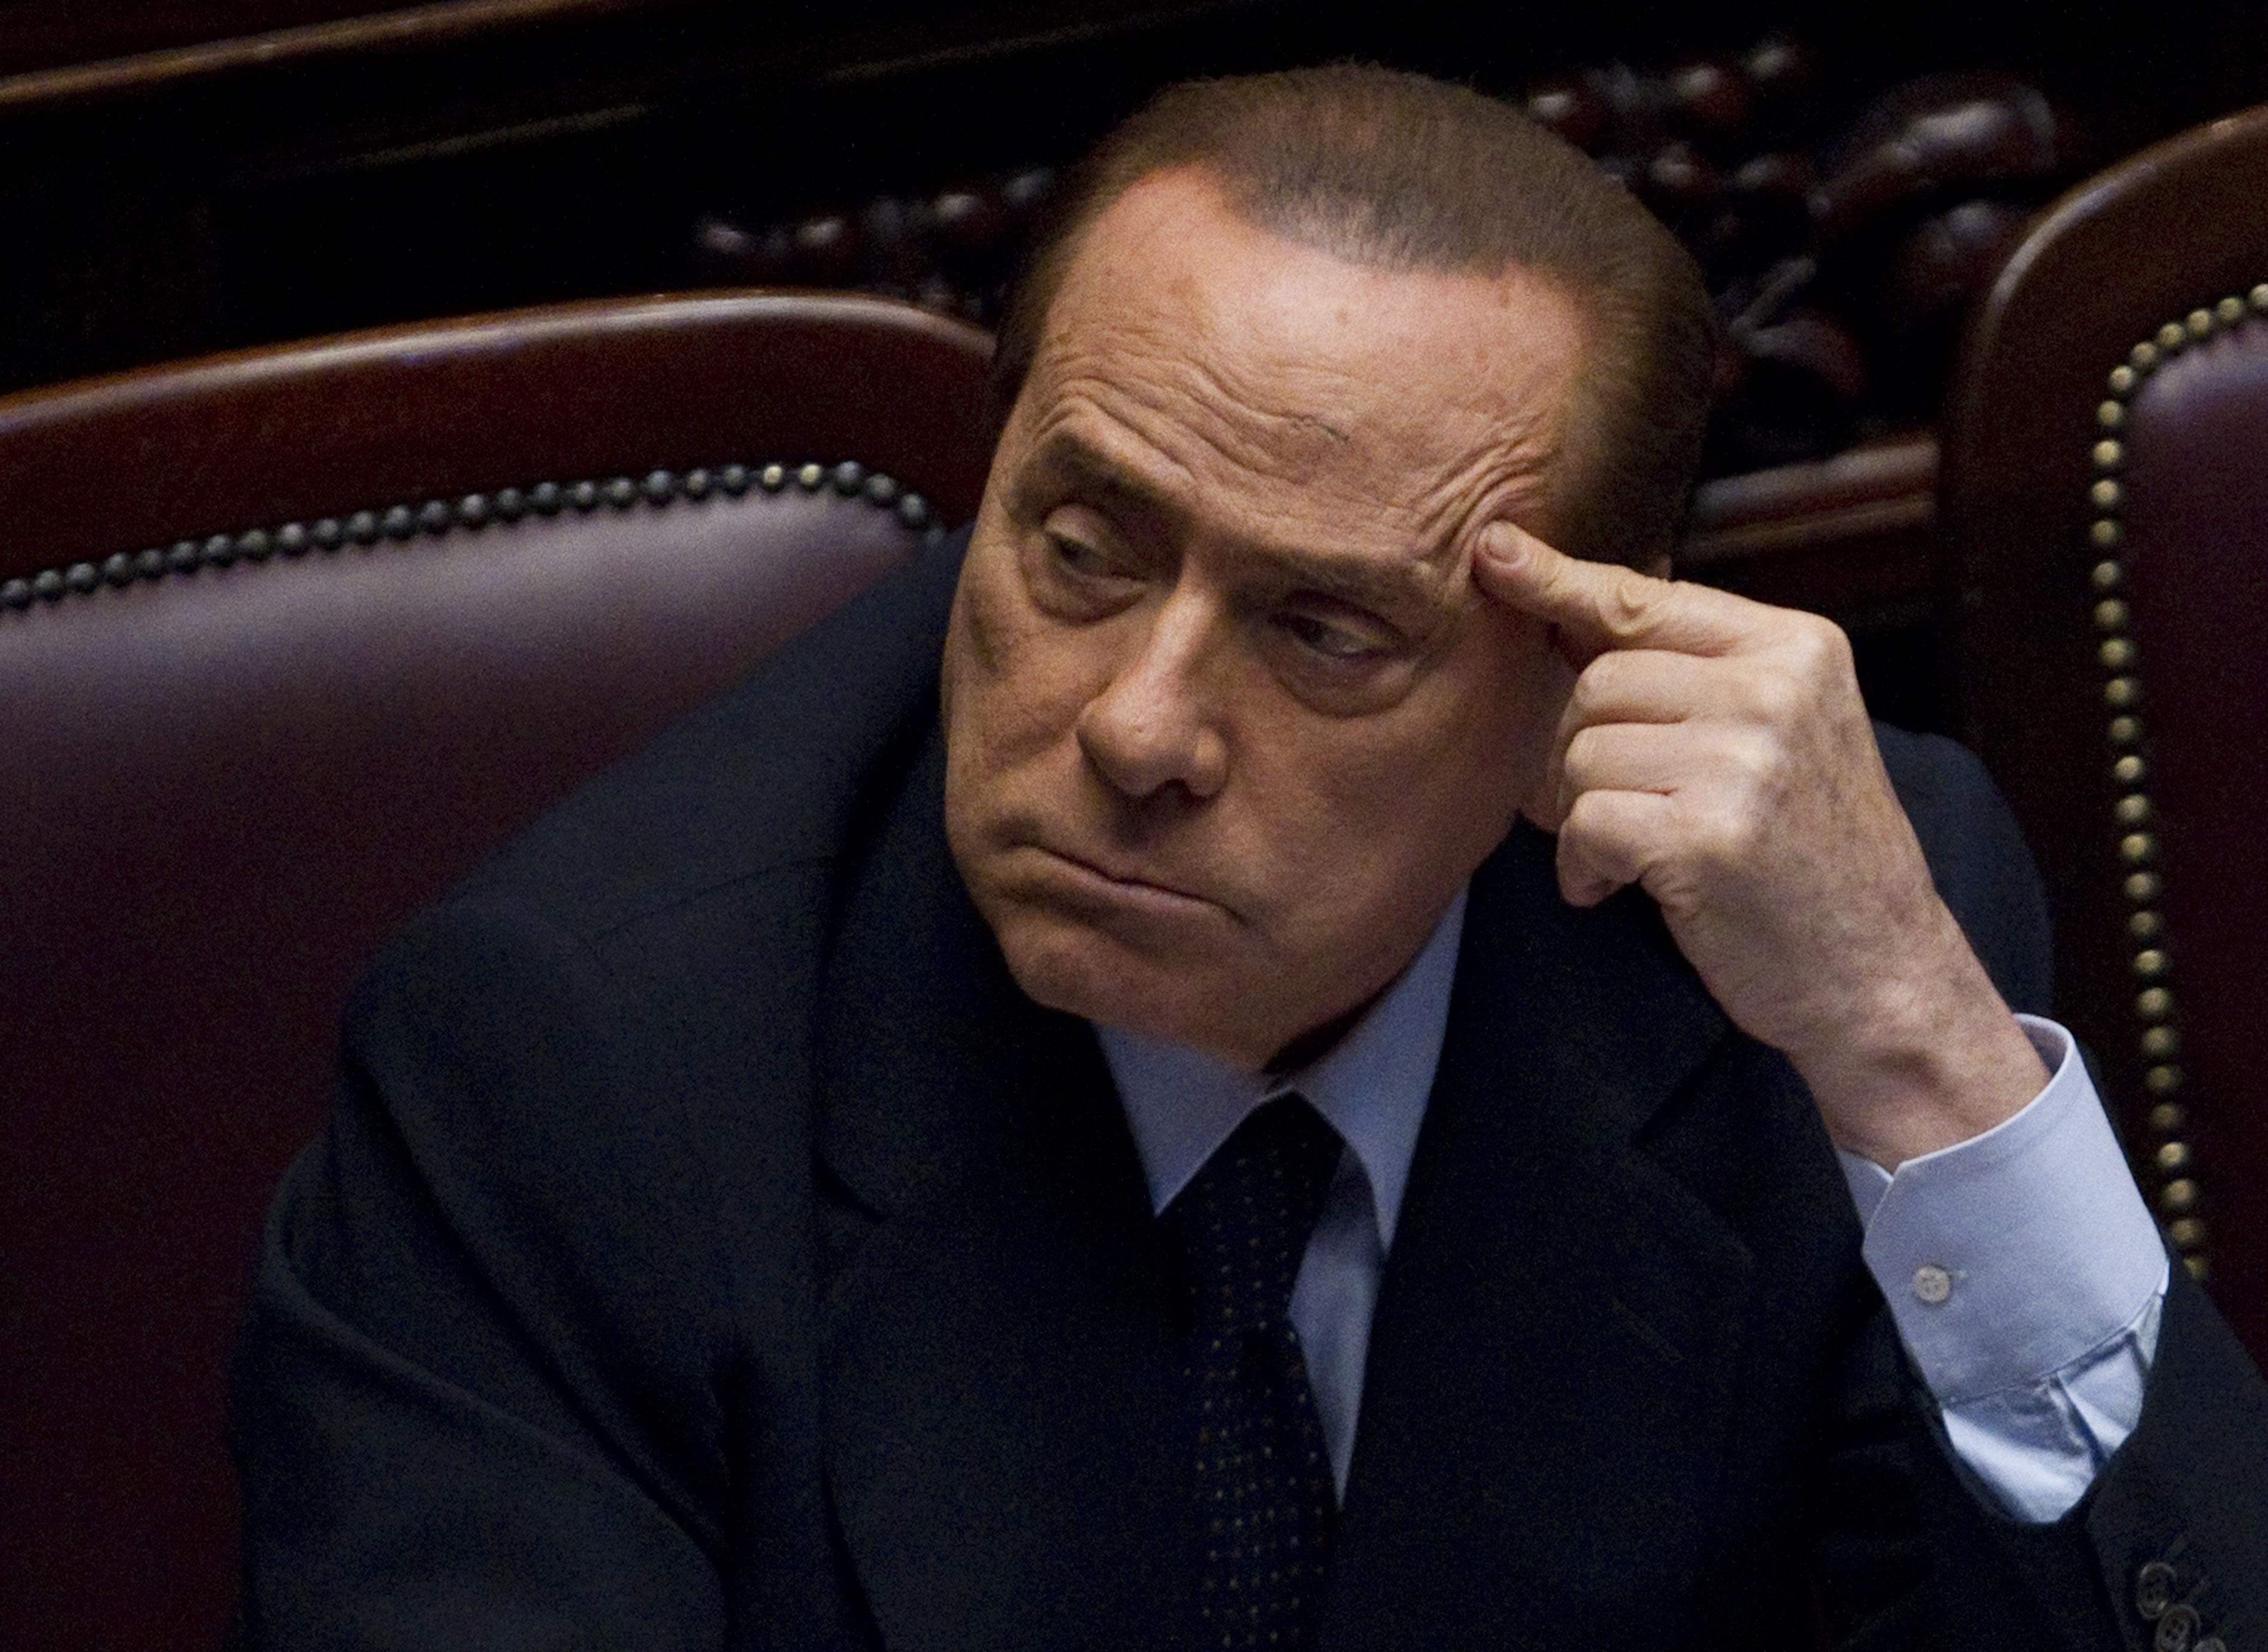 Italien, Silvio Berlusconi, Köp av sexuell tjänst, Brott och straff, Prostitution, Berlusconi, Sexualbrott, Sex- och samlevnad, Utpressning, Politik